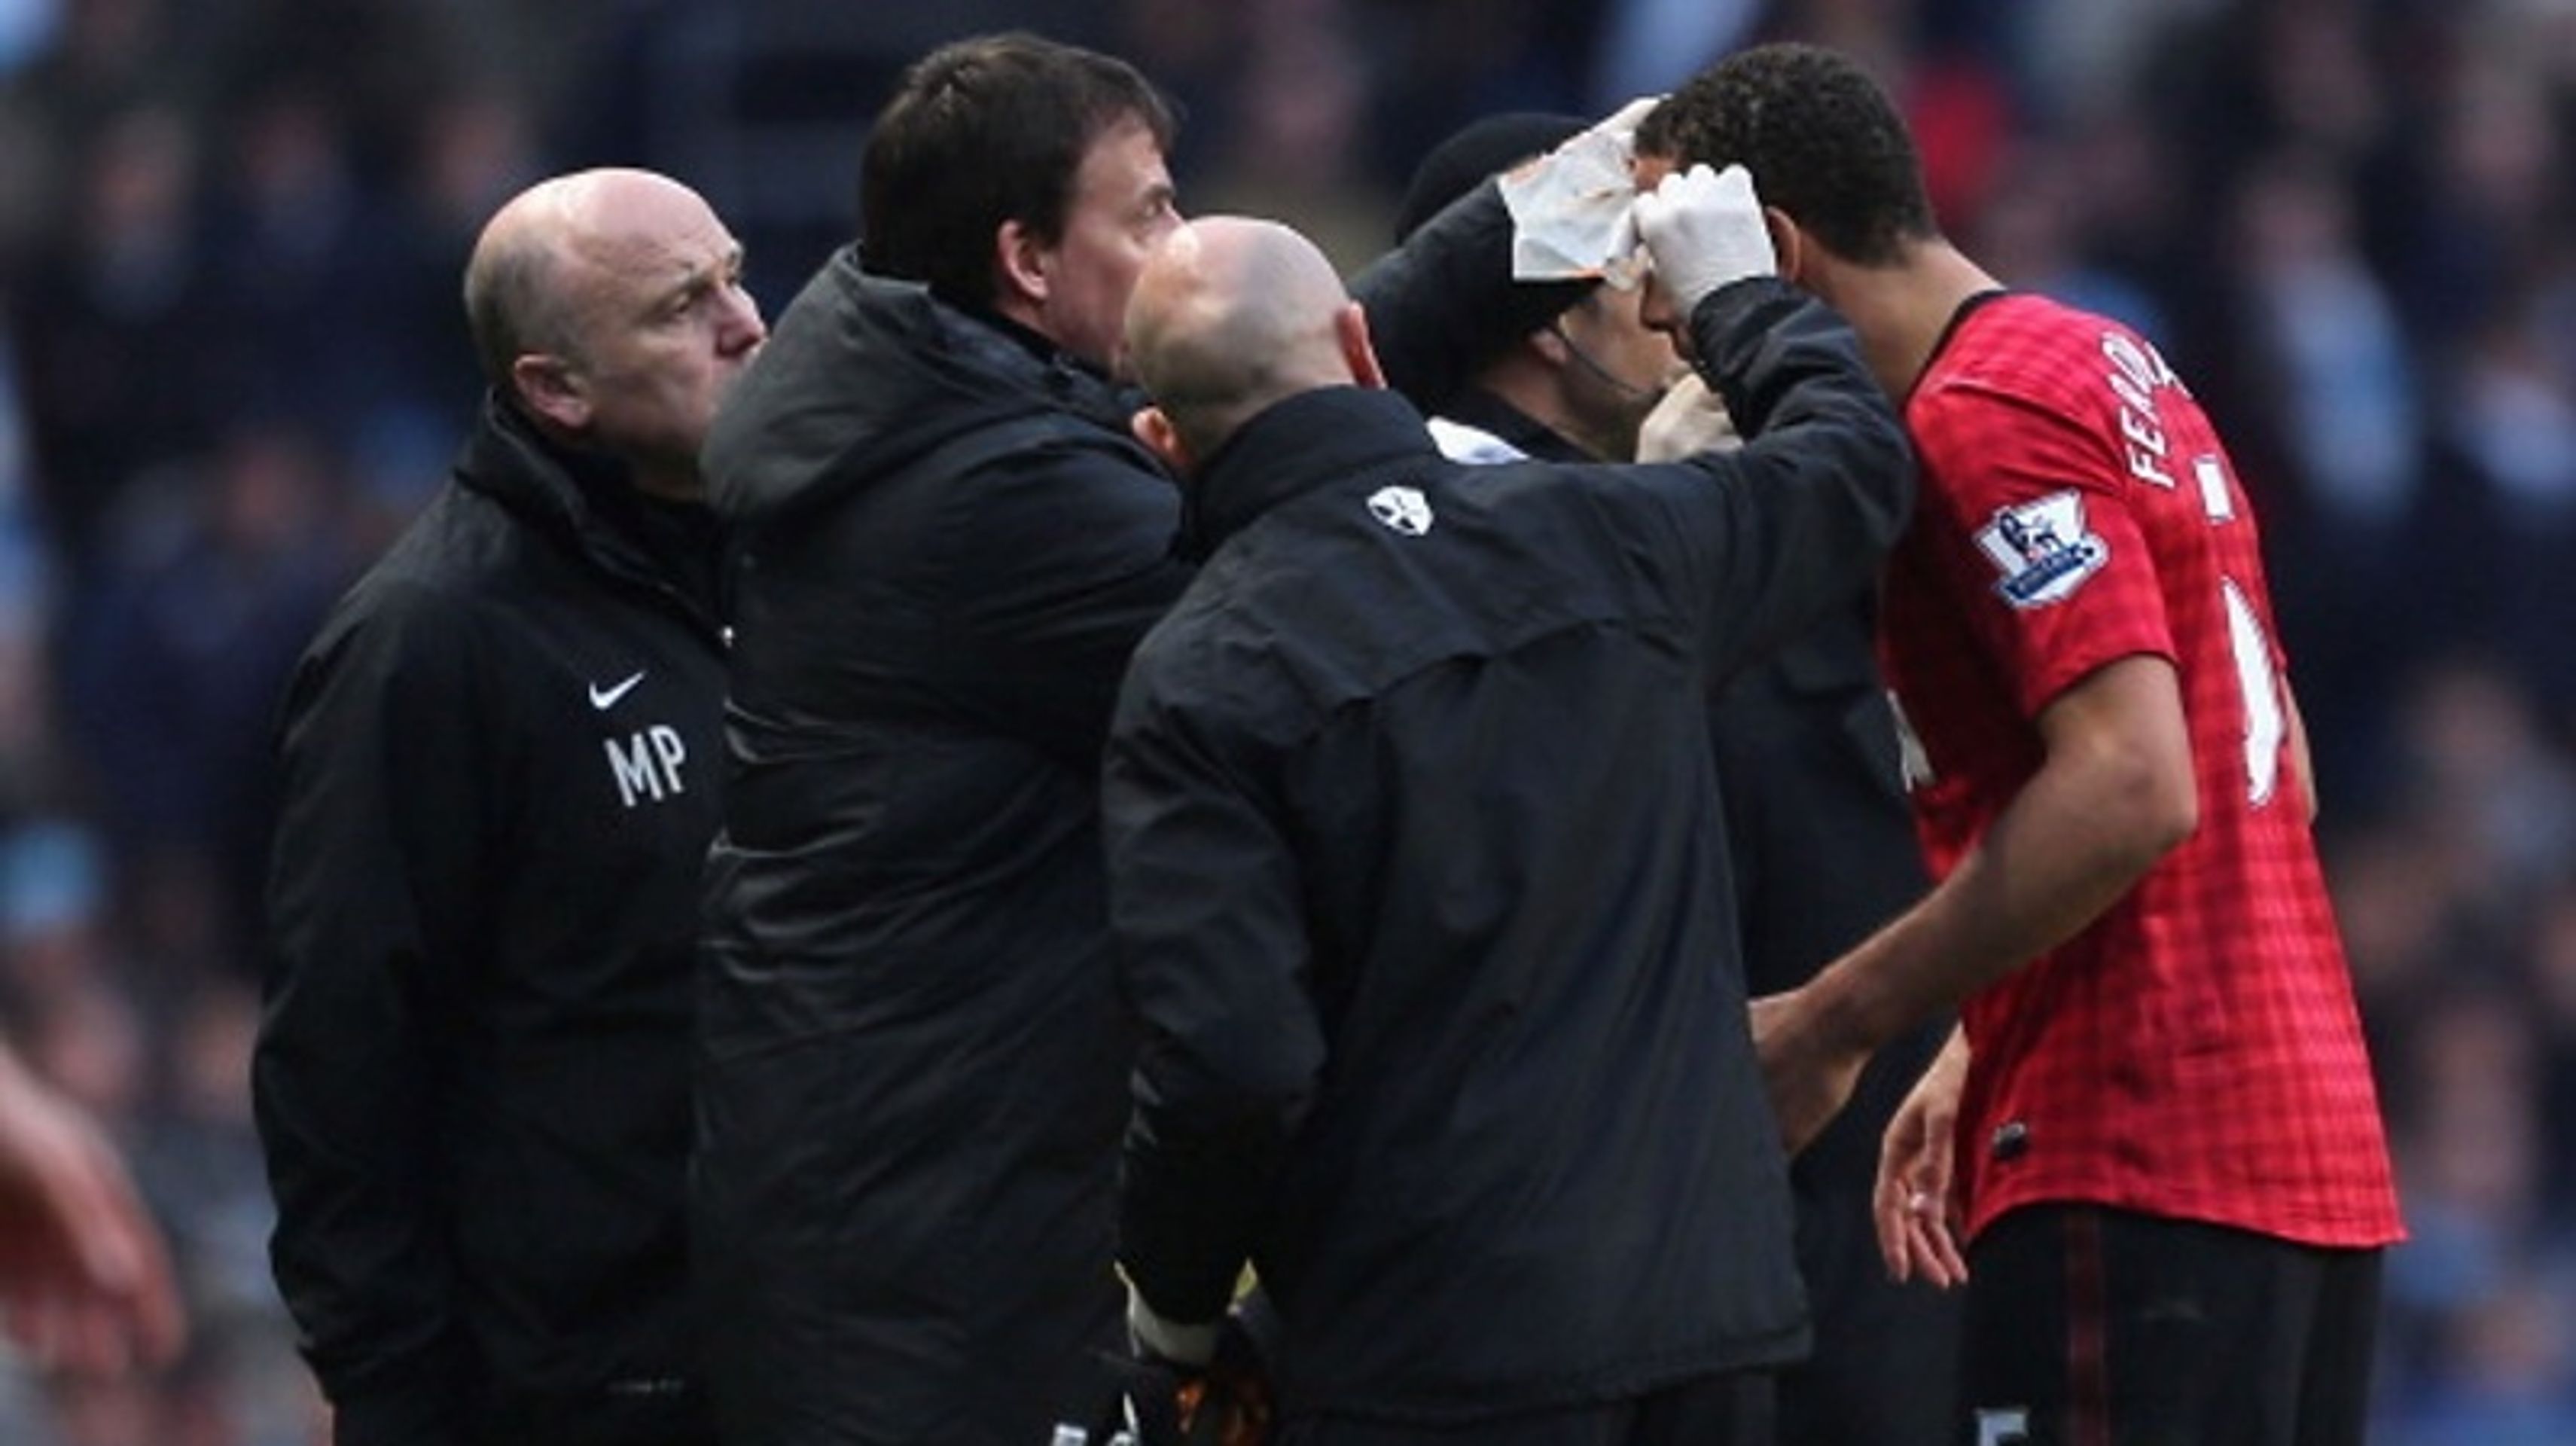 Fanoušci City krvavě zranili Ferdinanda z United - 5 - GALERIE: Fanoušci City krvavě zranili Ferdinanda z United (5/5)